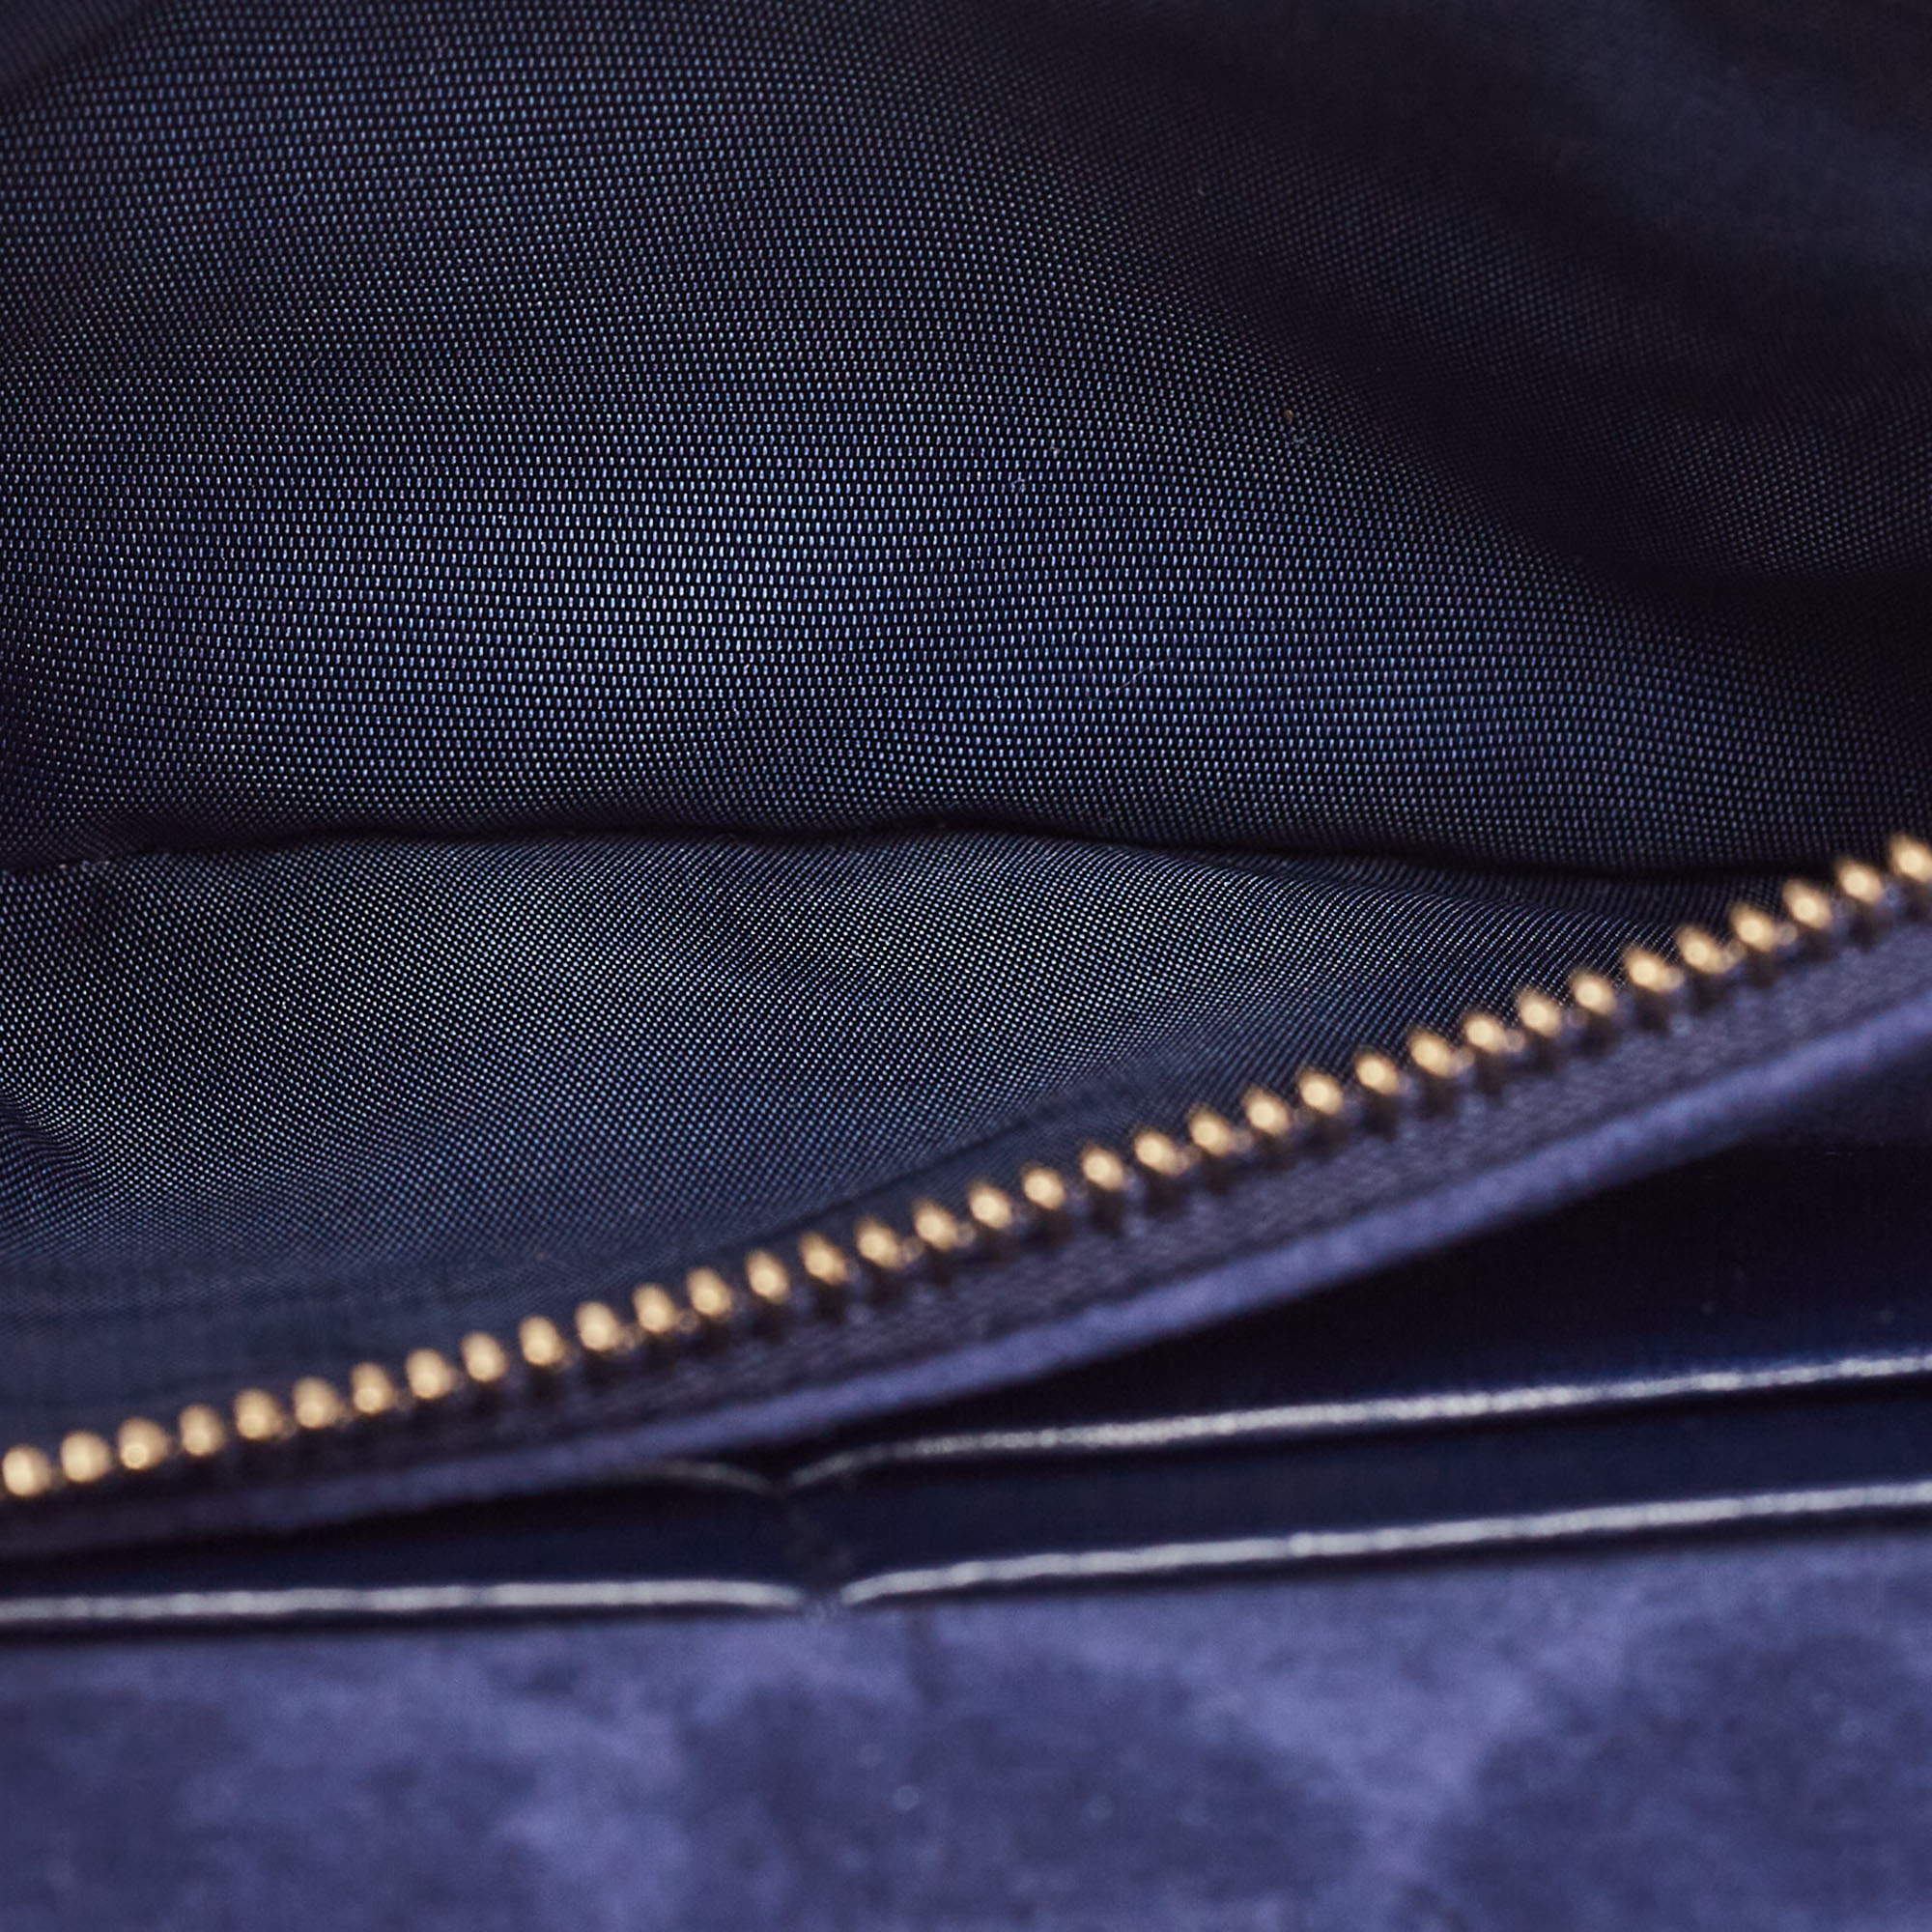 Dior Indigo Blue Cannage Leather Daddi Chain Pouch